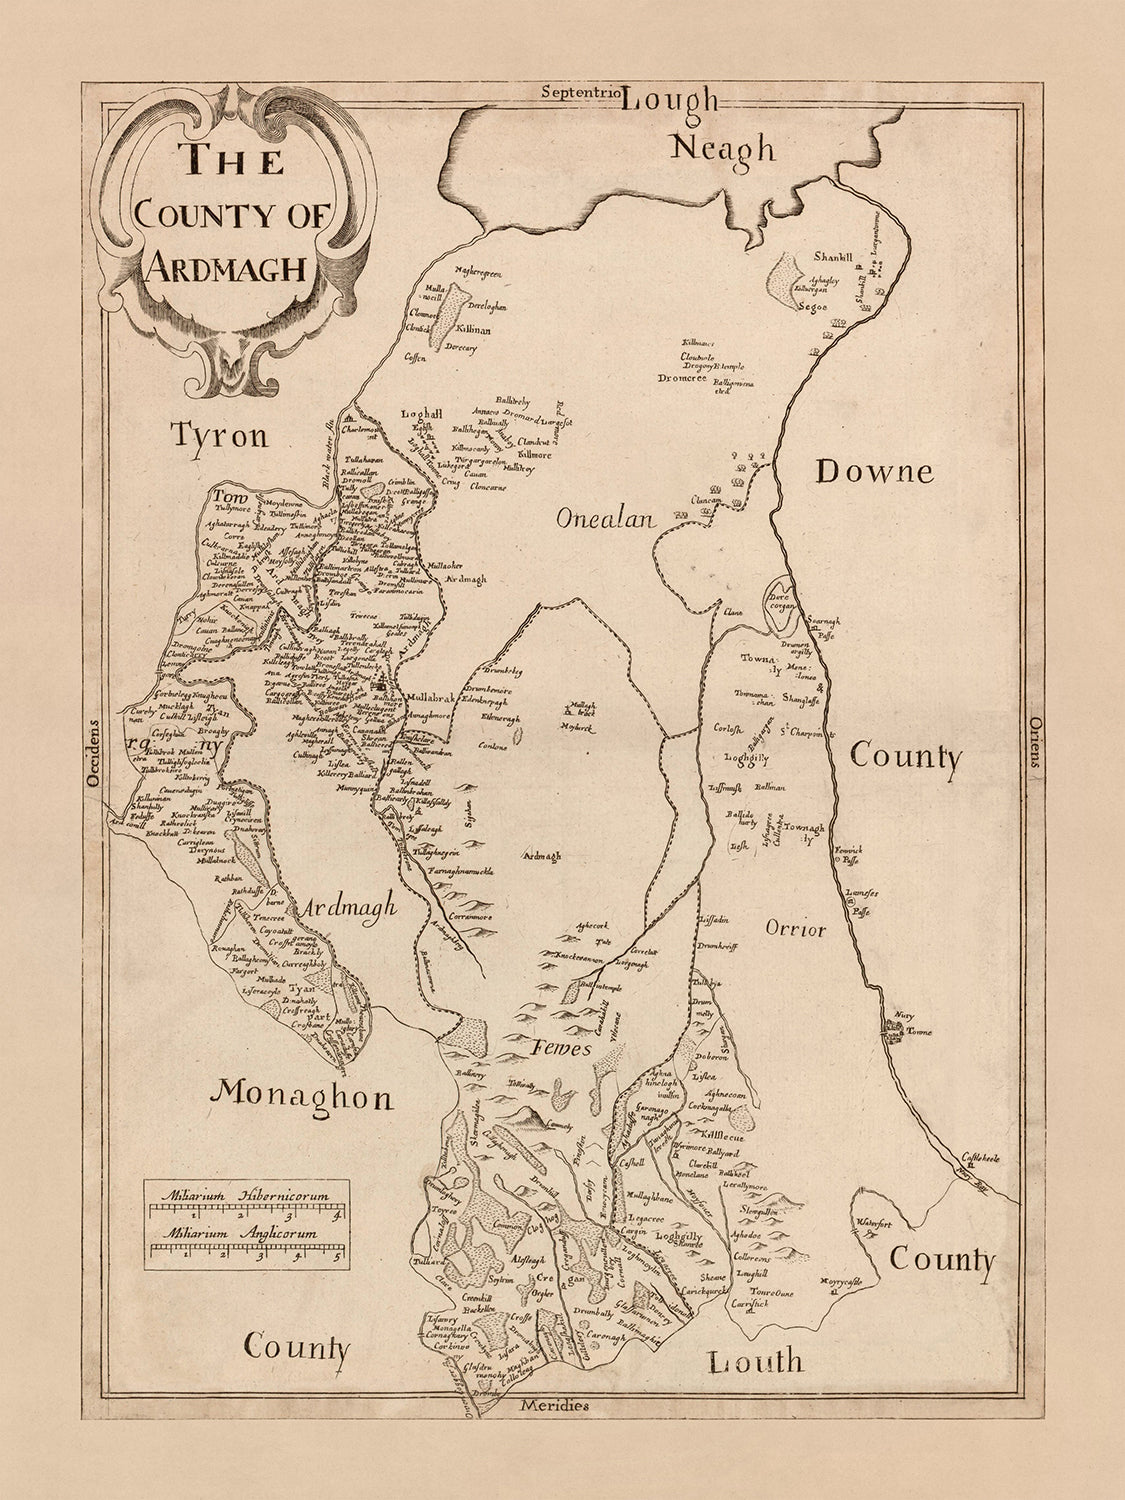 Alte Karte der Grafschaft Armagh von Petty, 1685: Armagh, Charlemont, Portadown, Lurgan, Tandragee